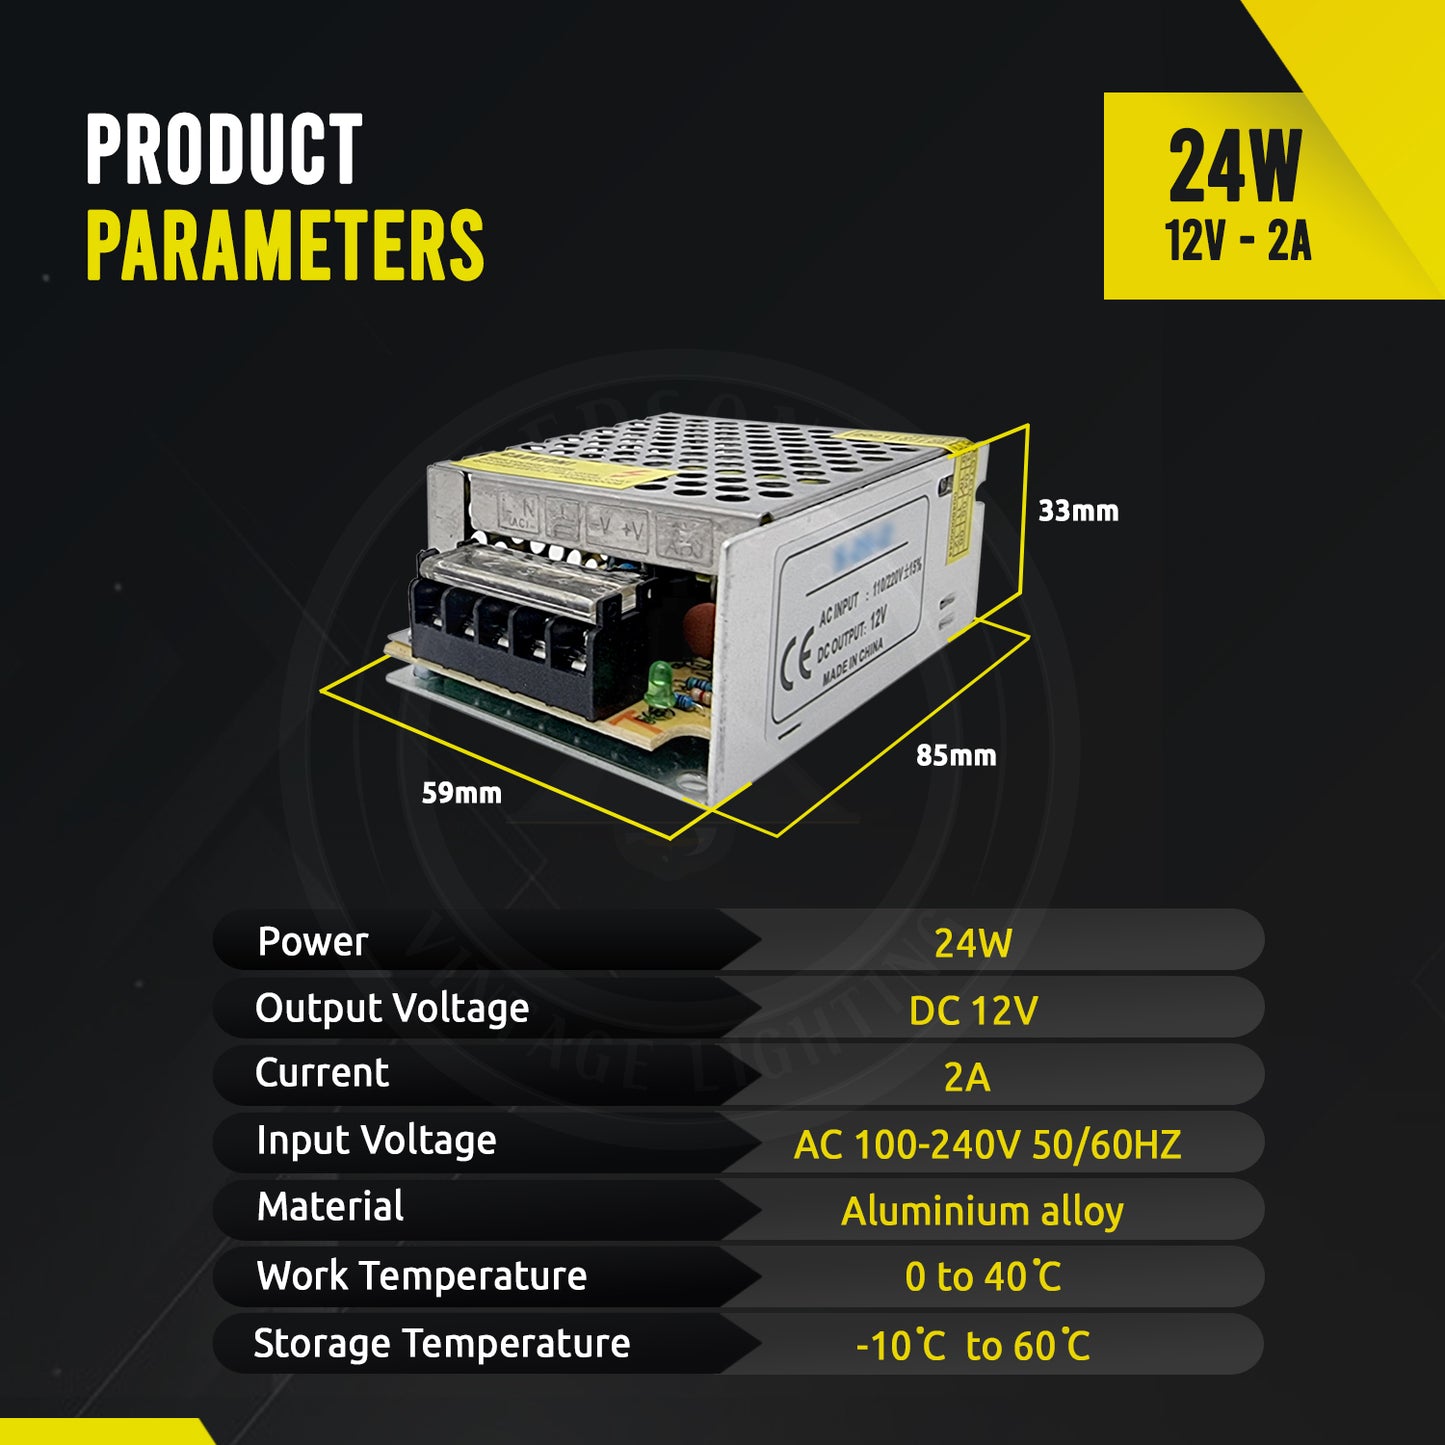 DC12V IP20 Indoor LED Driver Power Supply Transformer